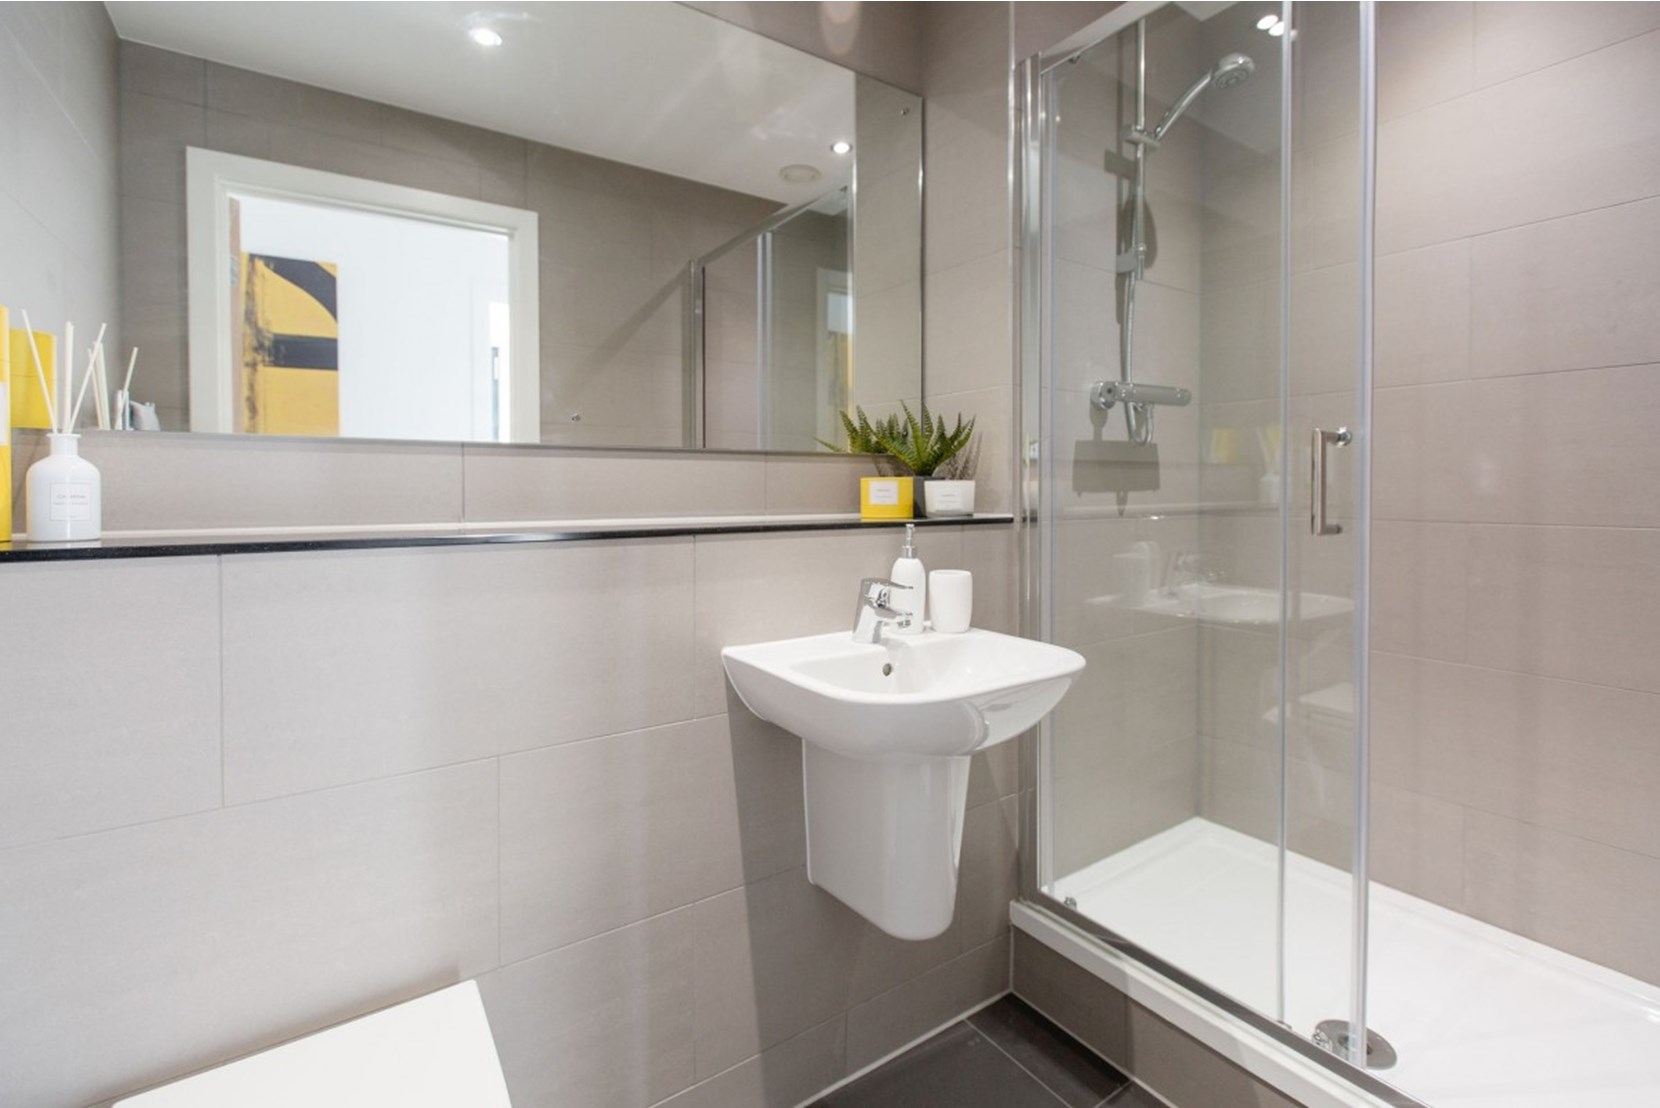 Apartment-Allsop-Vox-Manchester-interior-bathroom